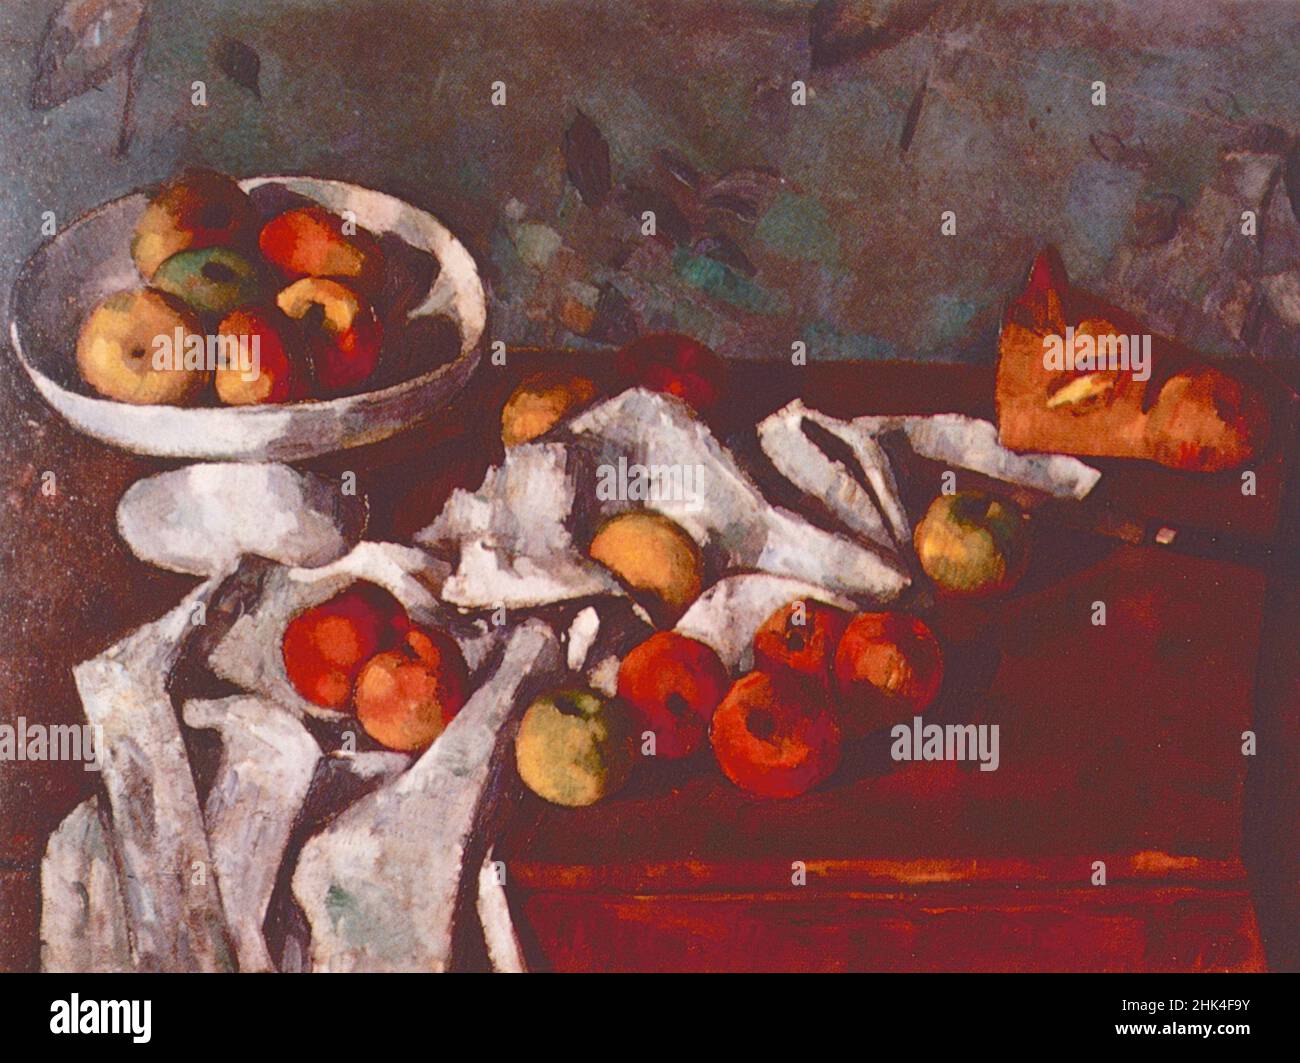 Toujours la vie avec les fruits, peinture de l'artiste français Paul Cezanne, 1870s Banque D'Images